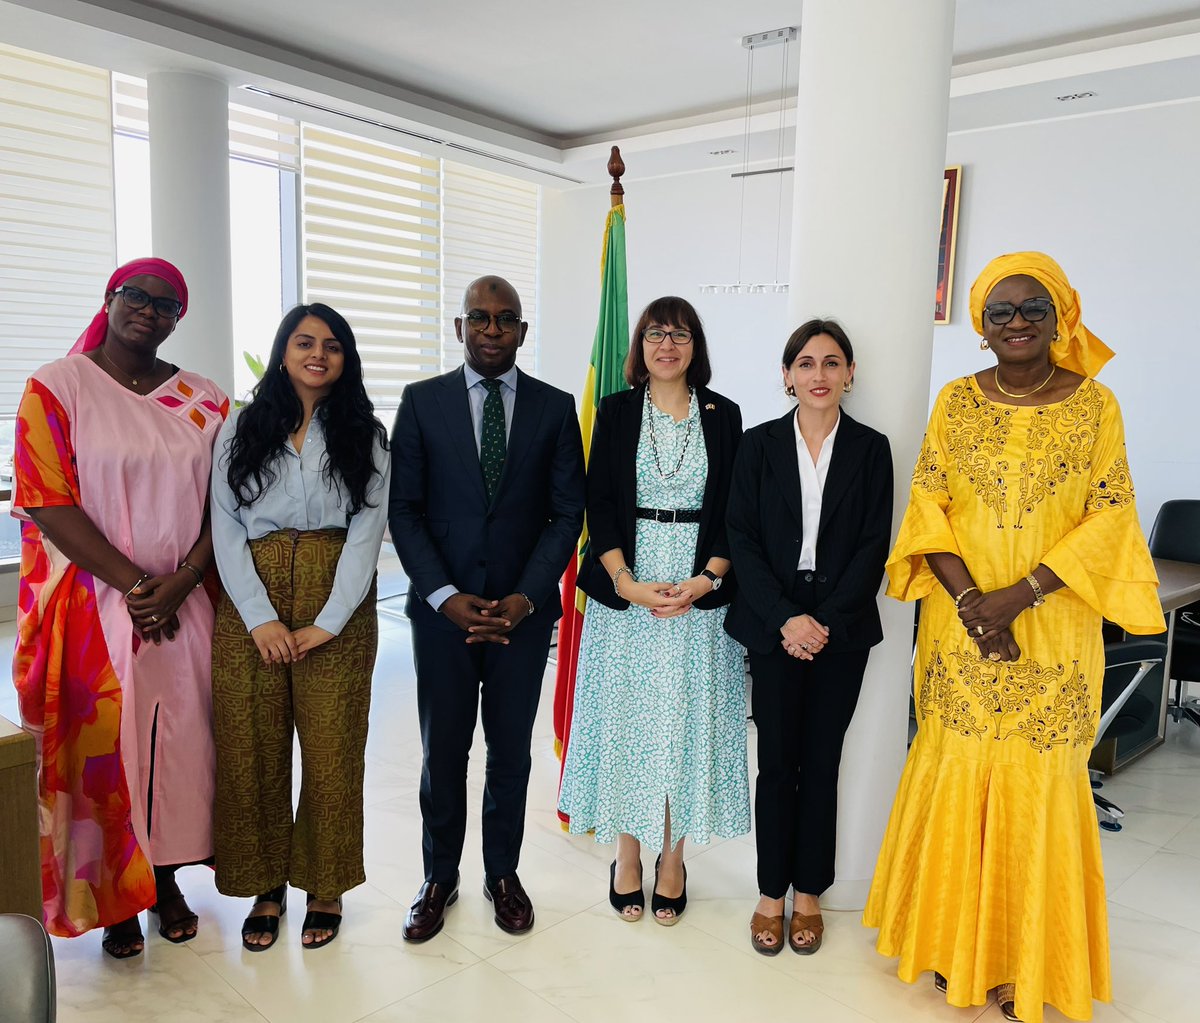 Un plaisir de rencontrer SE @M_M_Guirassy Ministre de l’éducation et son SG pour discuter des enjeux de l’éducation au Sénégal, ainsi que l’appui britannique 🇬🇧 à travers le @GPforEducation et notre programme #EnglishConnects avec le @BritishCouncil.